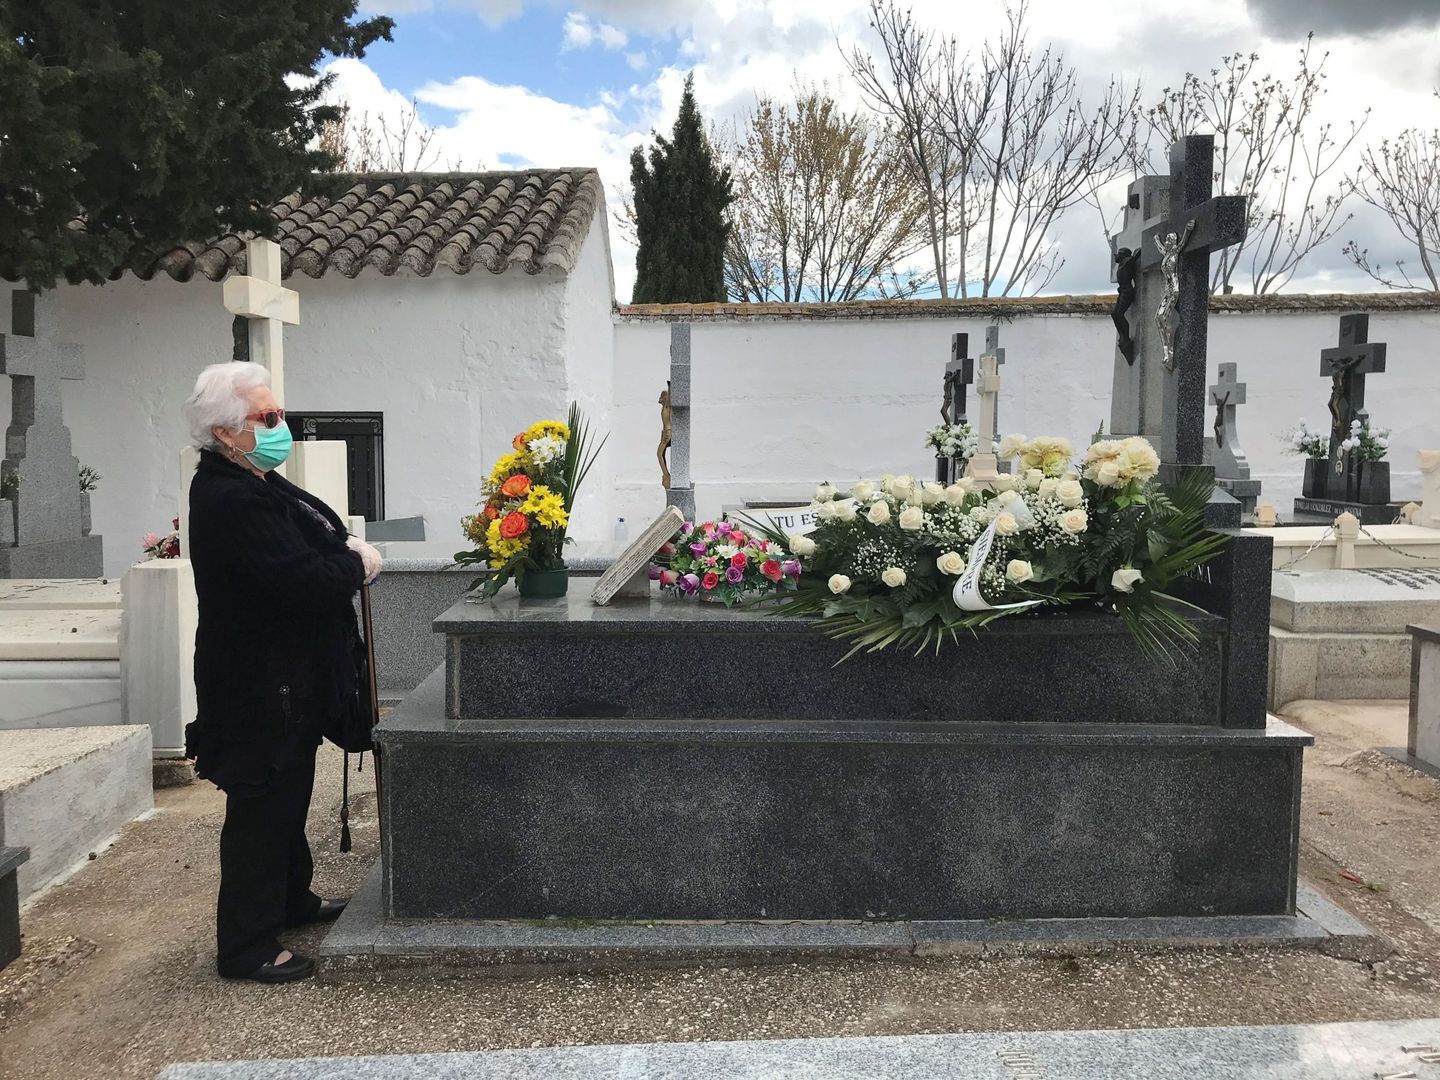 Una mujer visita la tumba de un ser querido en el cementerio de Aldea del Rey, Ciudad Real. (EFE)